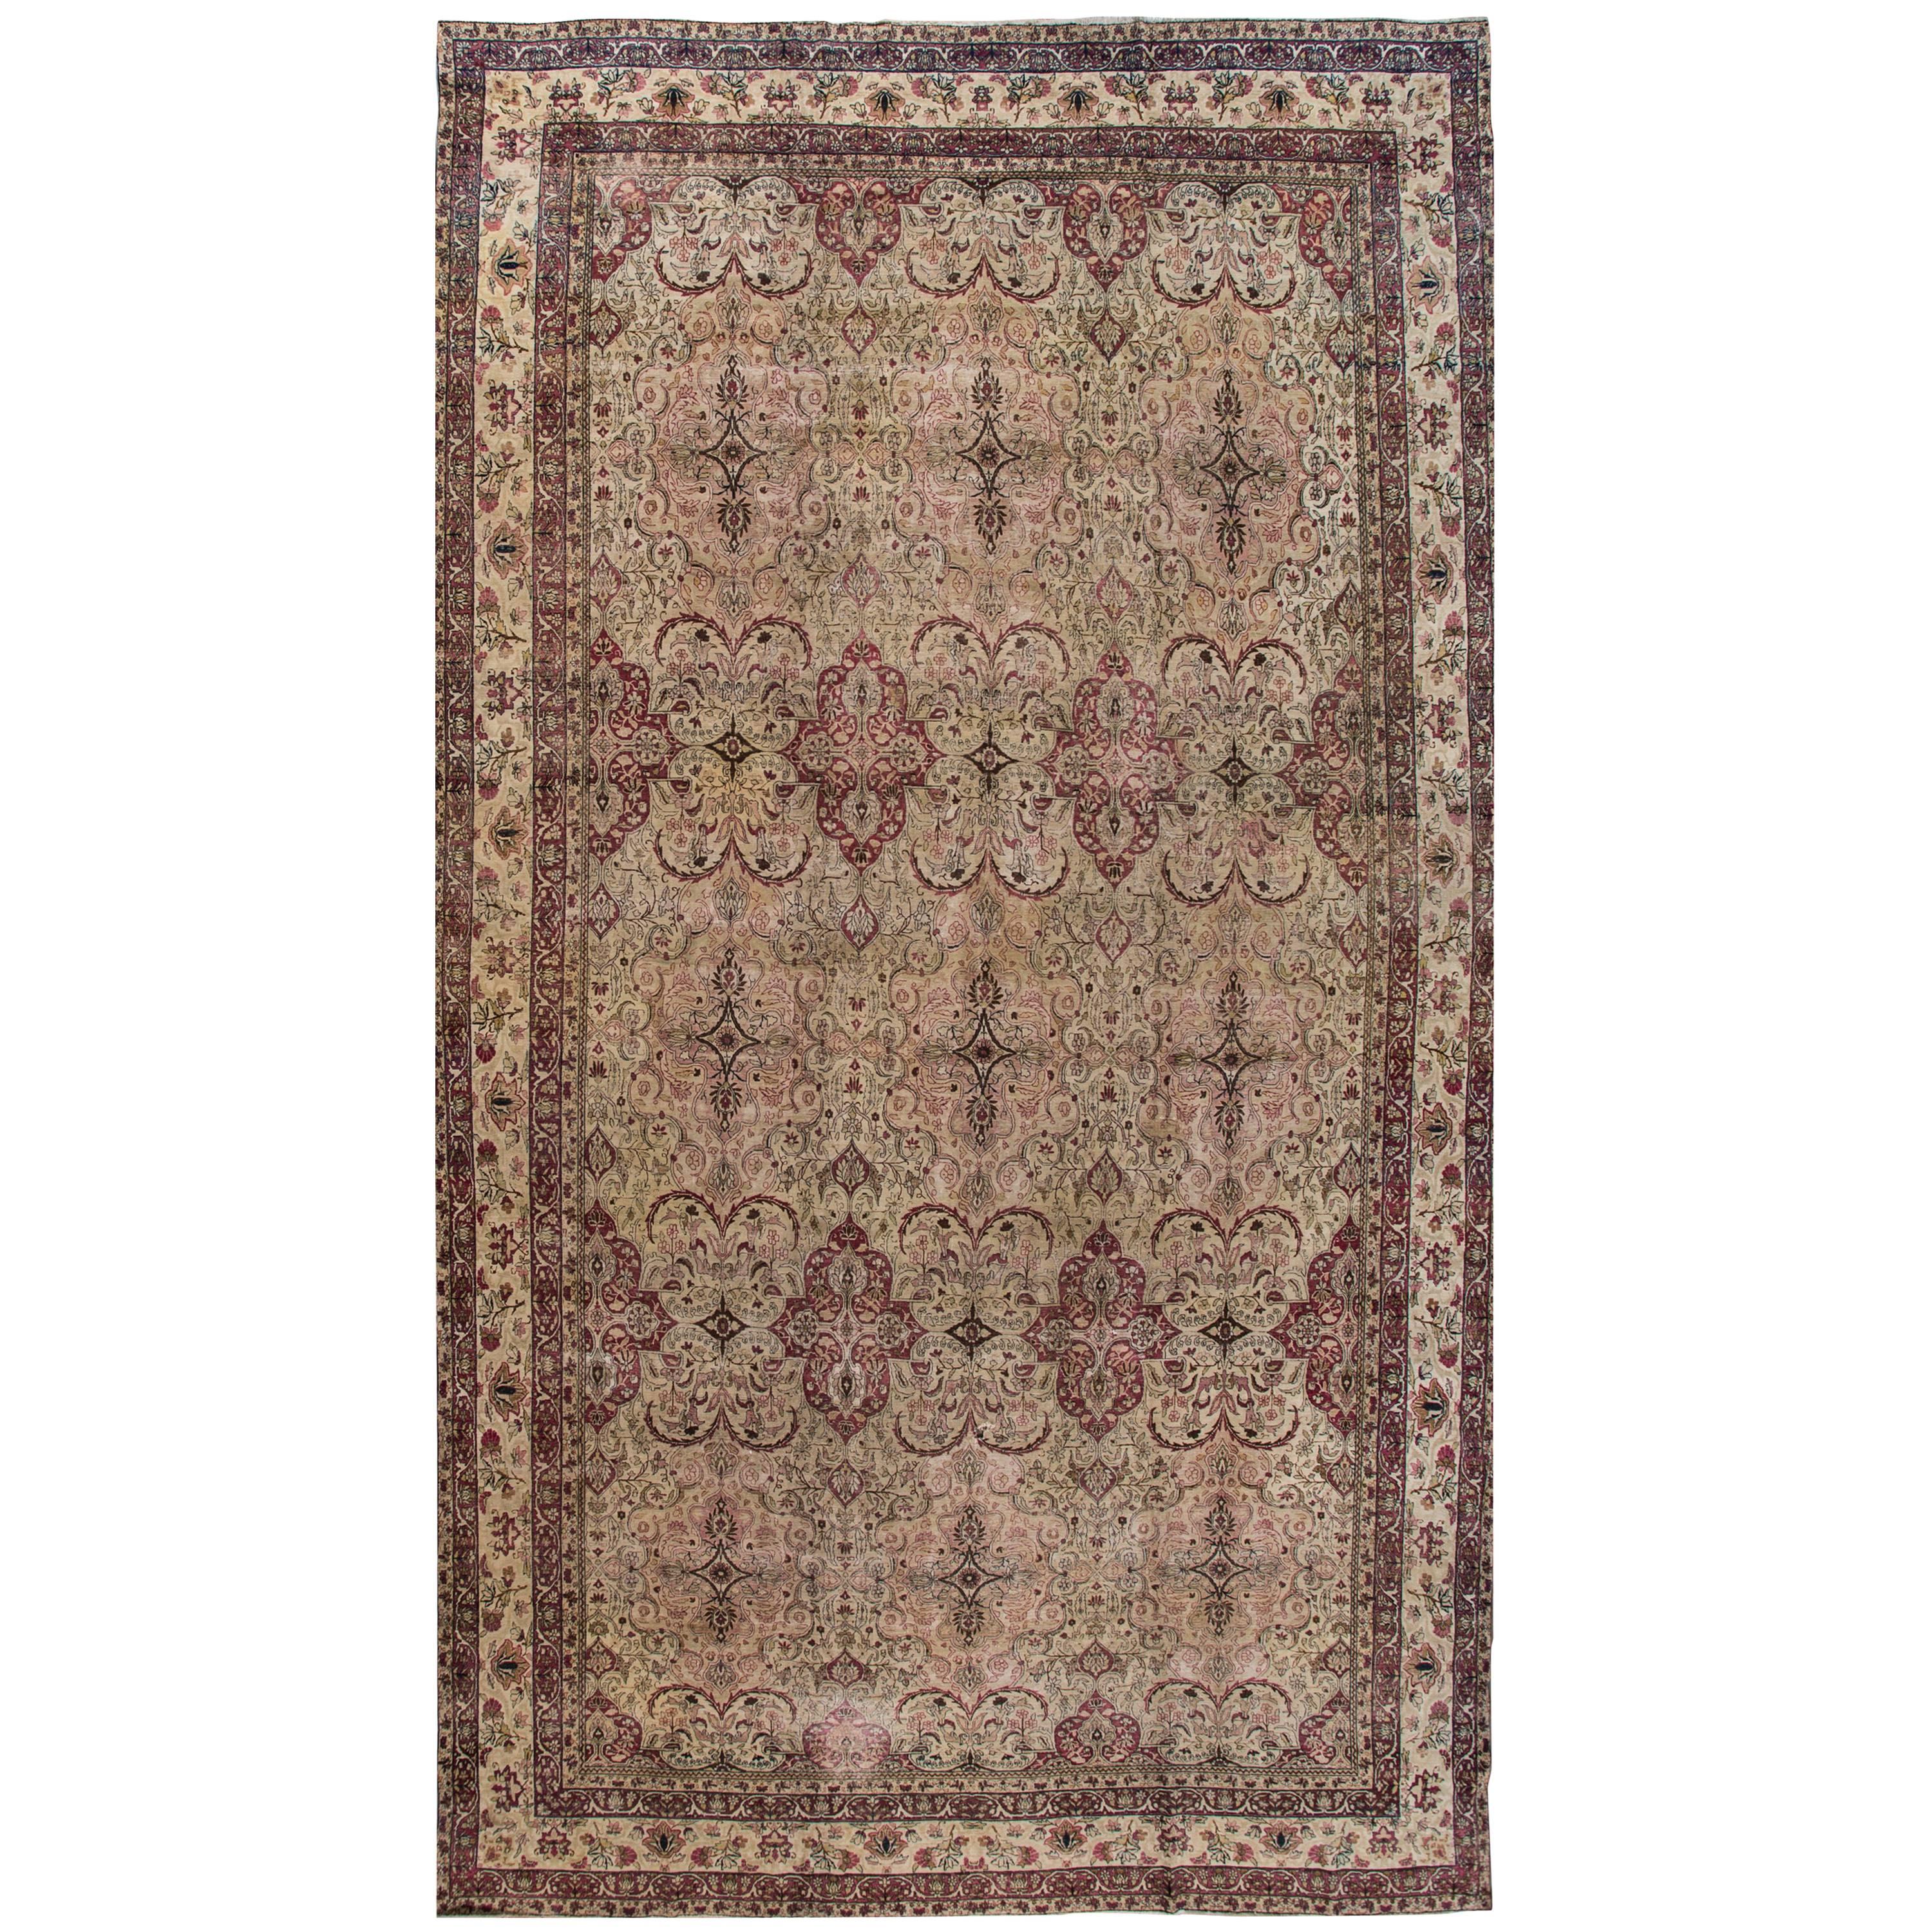 C. 1910 Persian Kerman Carpet For Sale at 1stDibs